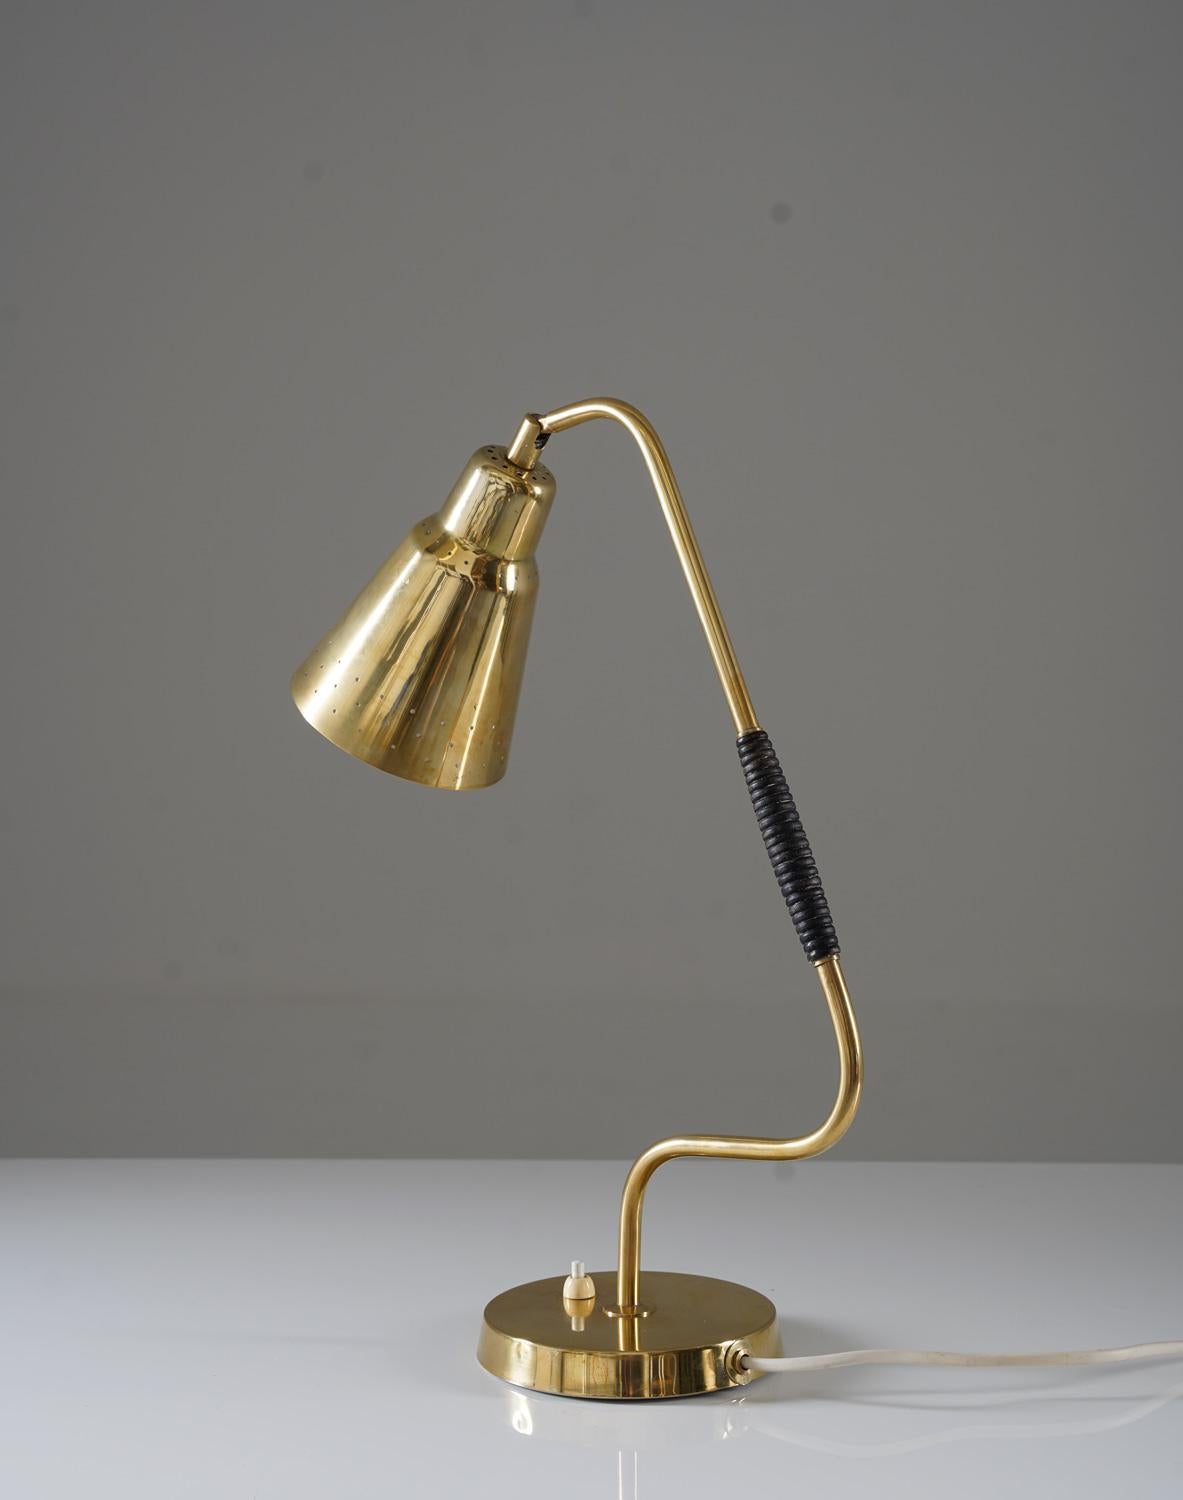 Wir stellen eine seltene und frühe Tischlampe von Bergboms vor. Diese wunderschöne Lampe ist aus massivem Messing gefertigt, mit einem perforierten Schirm und einem Holzgriff an der Stange. Sie wird mit einer E-14-Glühbirne mit einer maximalen